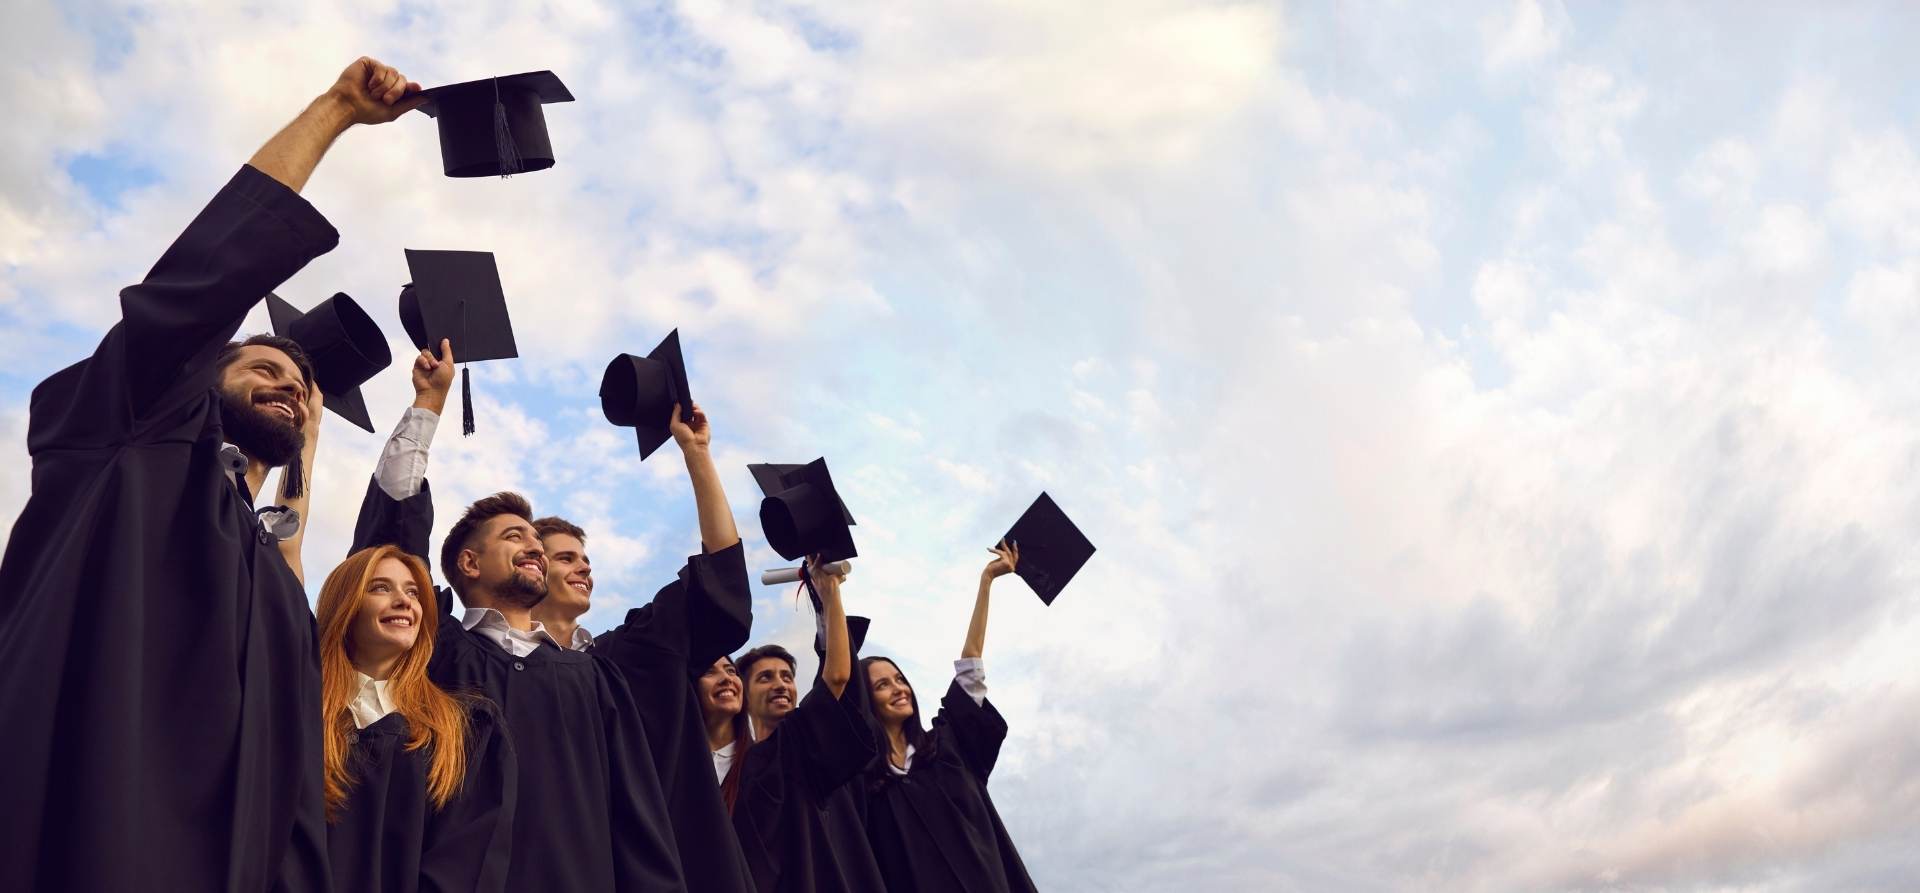 Graduates raising caps